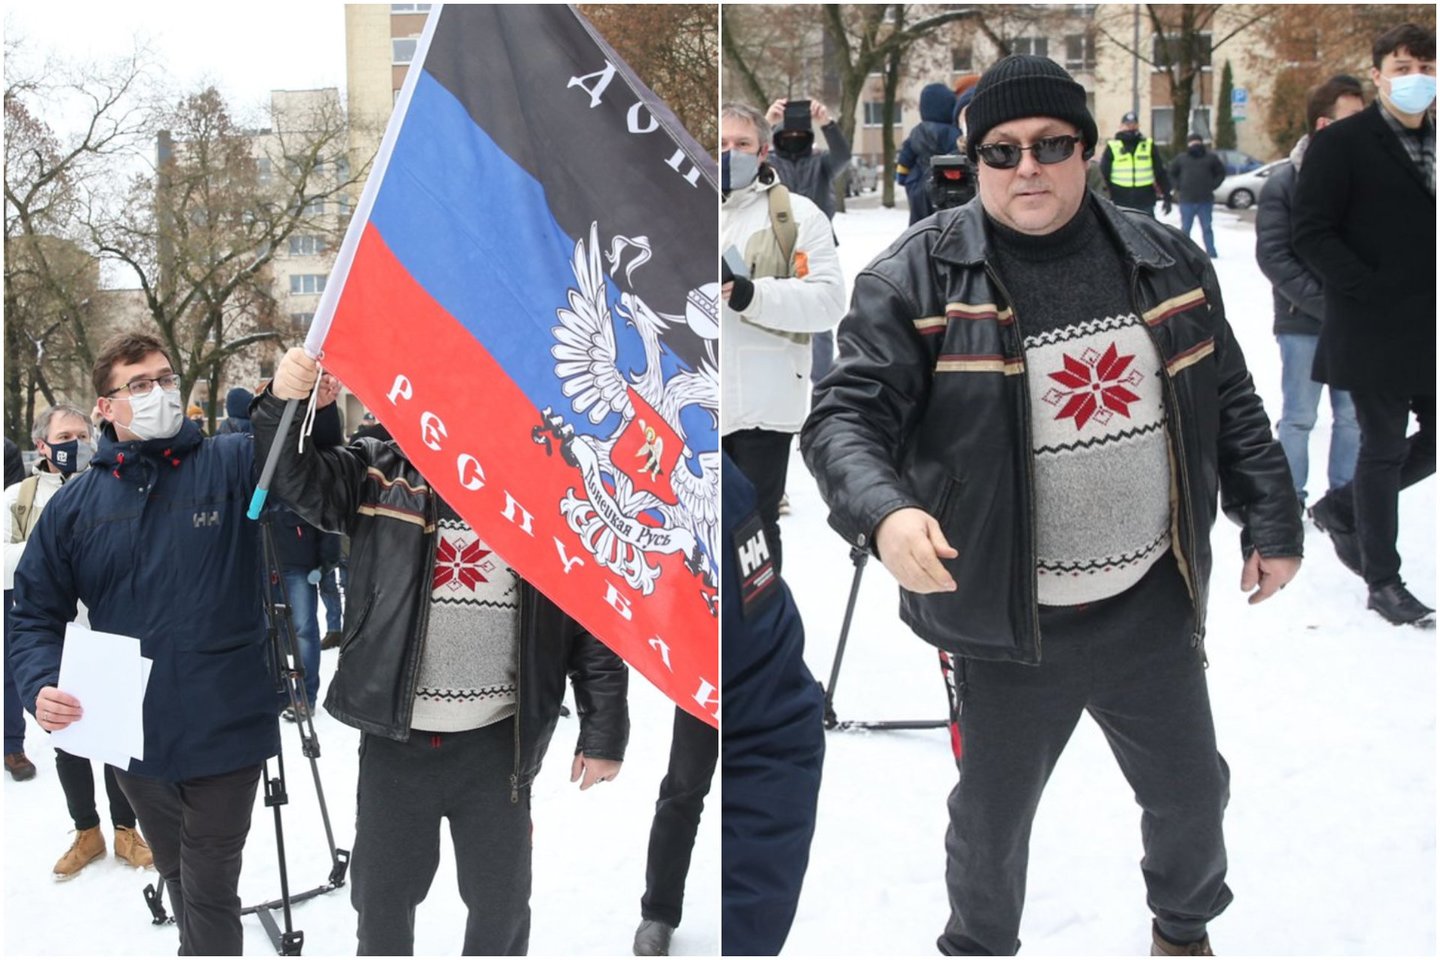  Per A.Navalno palaikymo mitingą Vilniuje sumaištį kėlęs apsišaukėlių paskelbtos "Donecko liaudies respublikos" gerbėjas (dešinėje) turės sumokėti administracines baudas.  <br> R.Danisevičiaus nuotr.